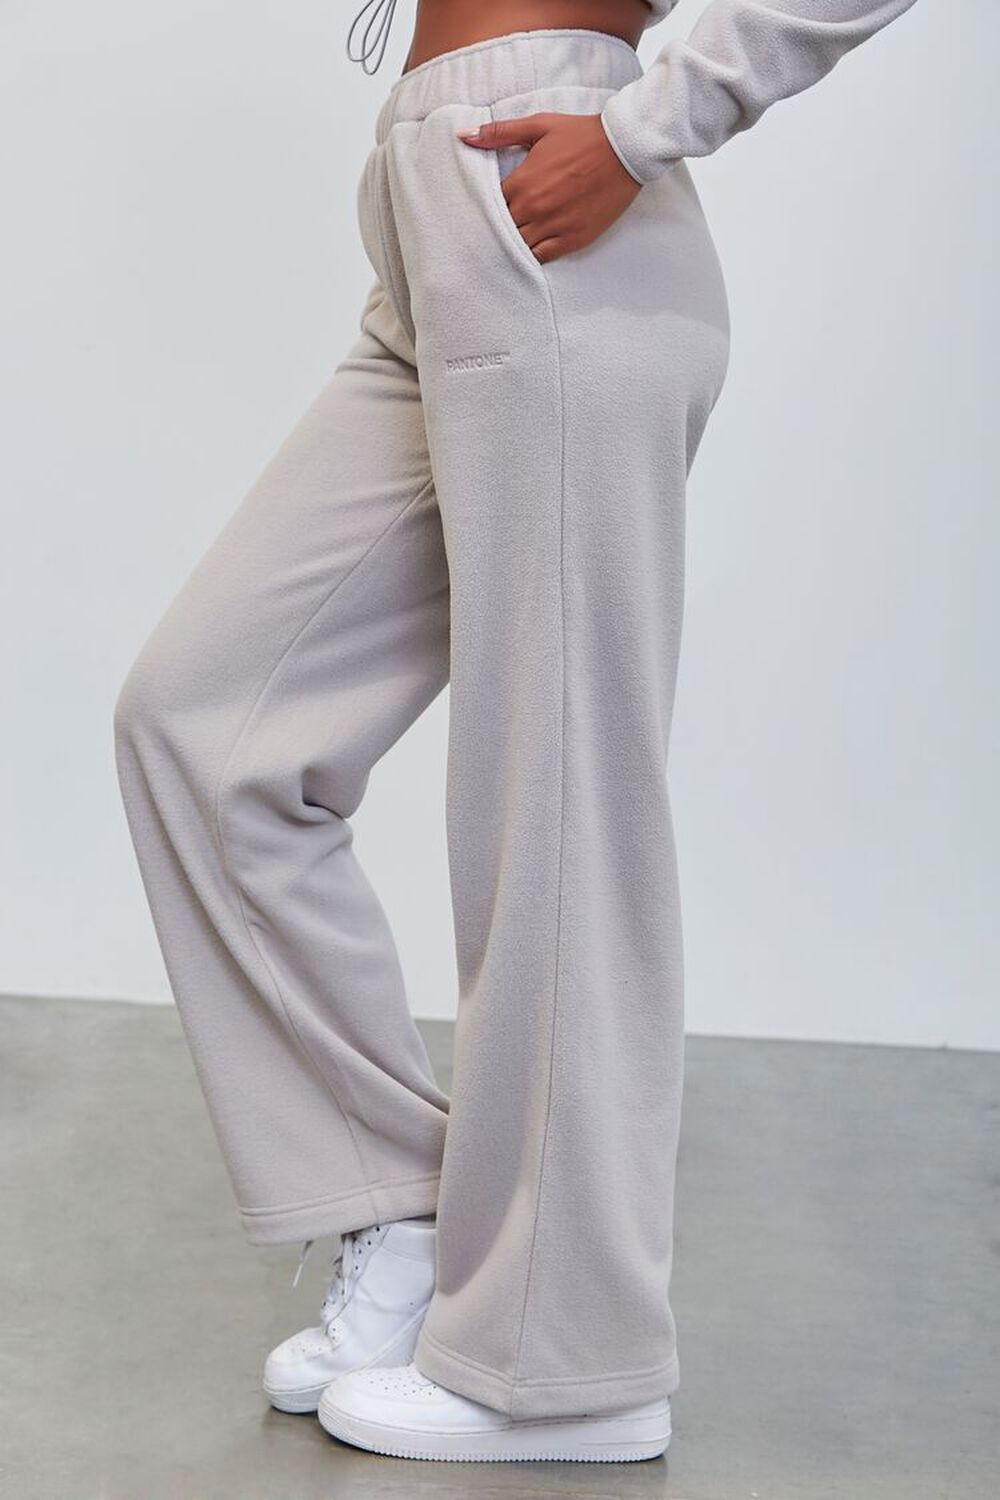 GREY Pantone Fleece Sweatpants, image 3